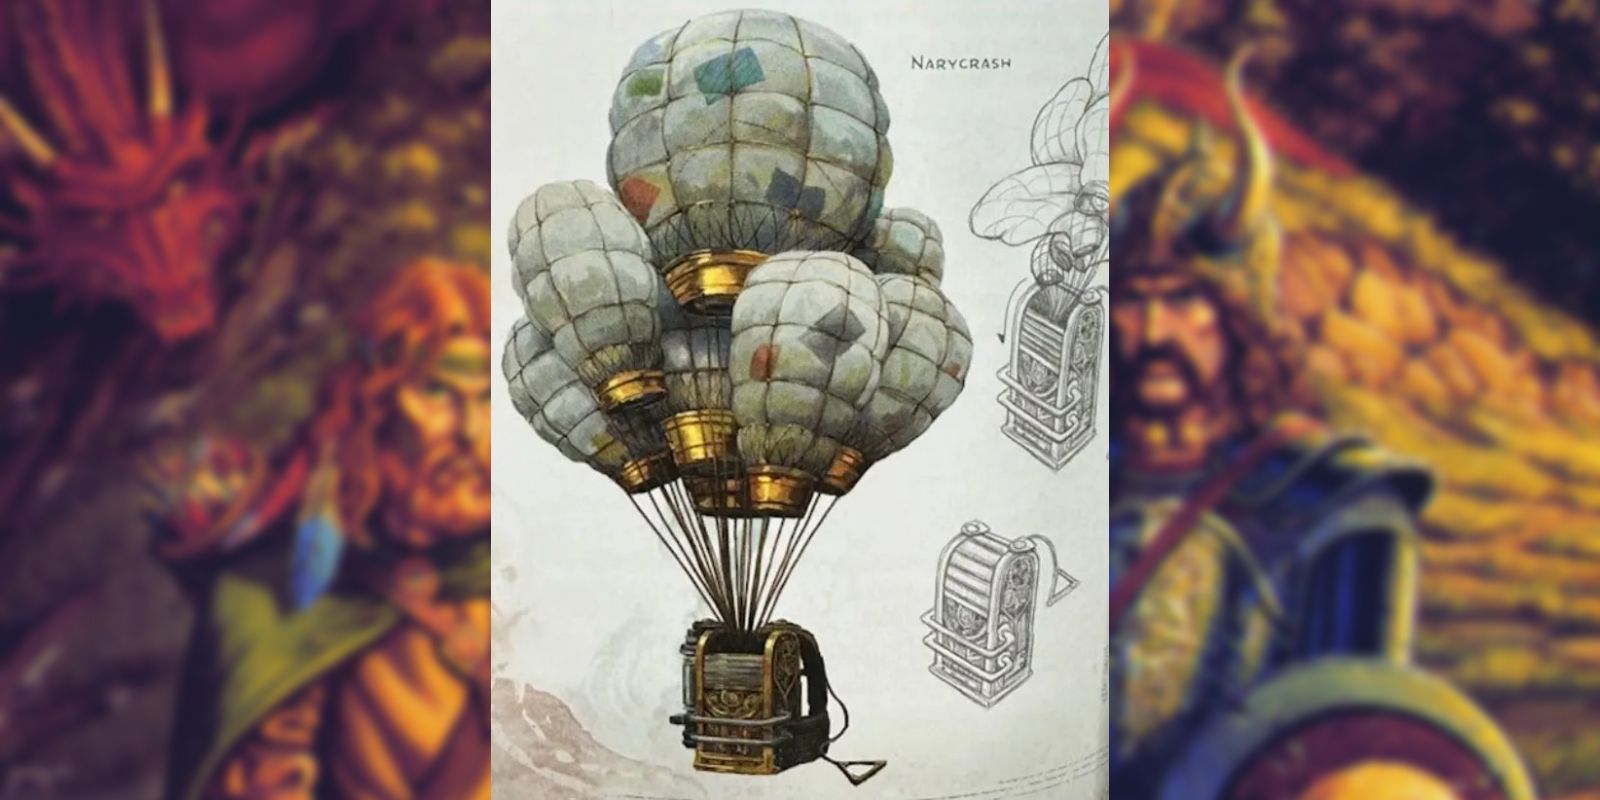 O Narycrash, uma engenhoca semelhante a muitos balões de ar quente conectados, mas usado nas costas de uma pessoa.